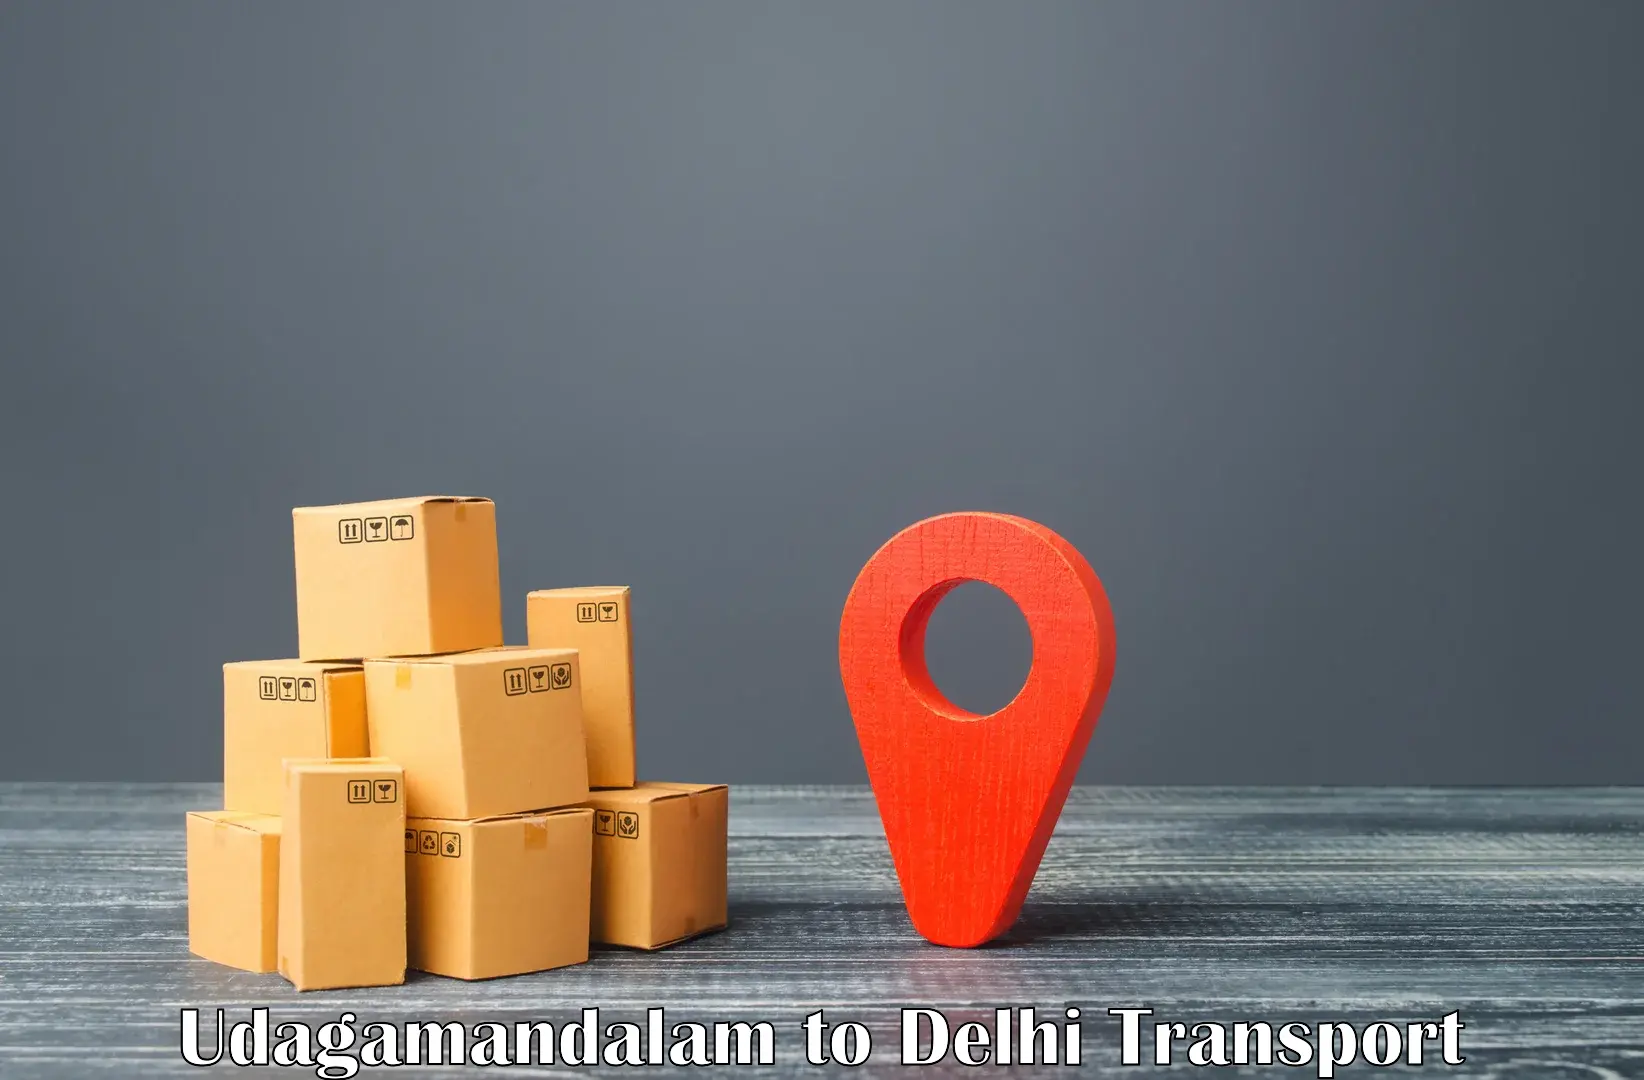 Online transport service Udagamandalam to Subhash Nagar